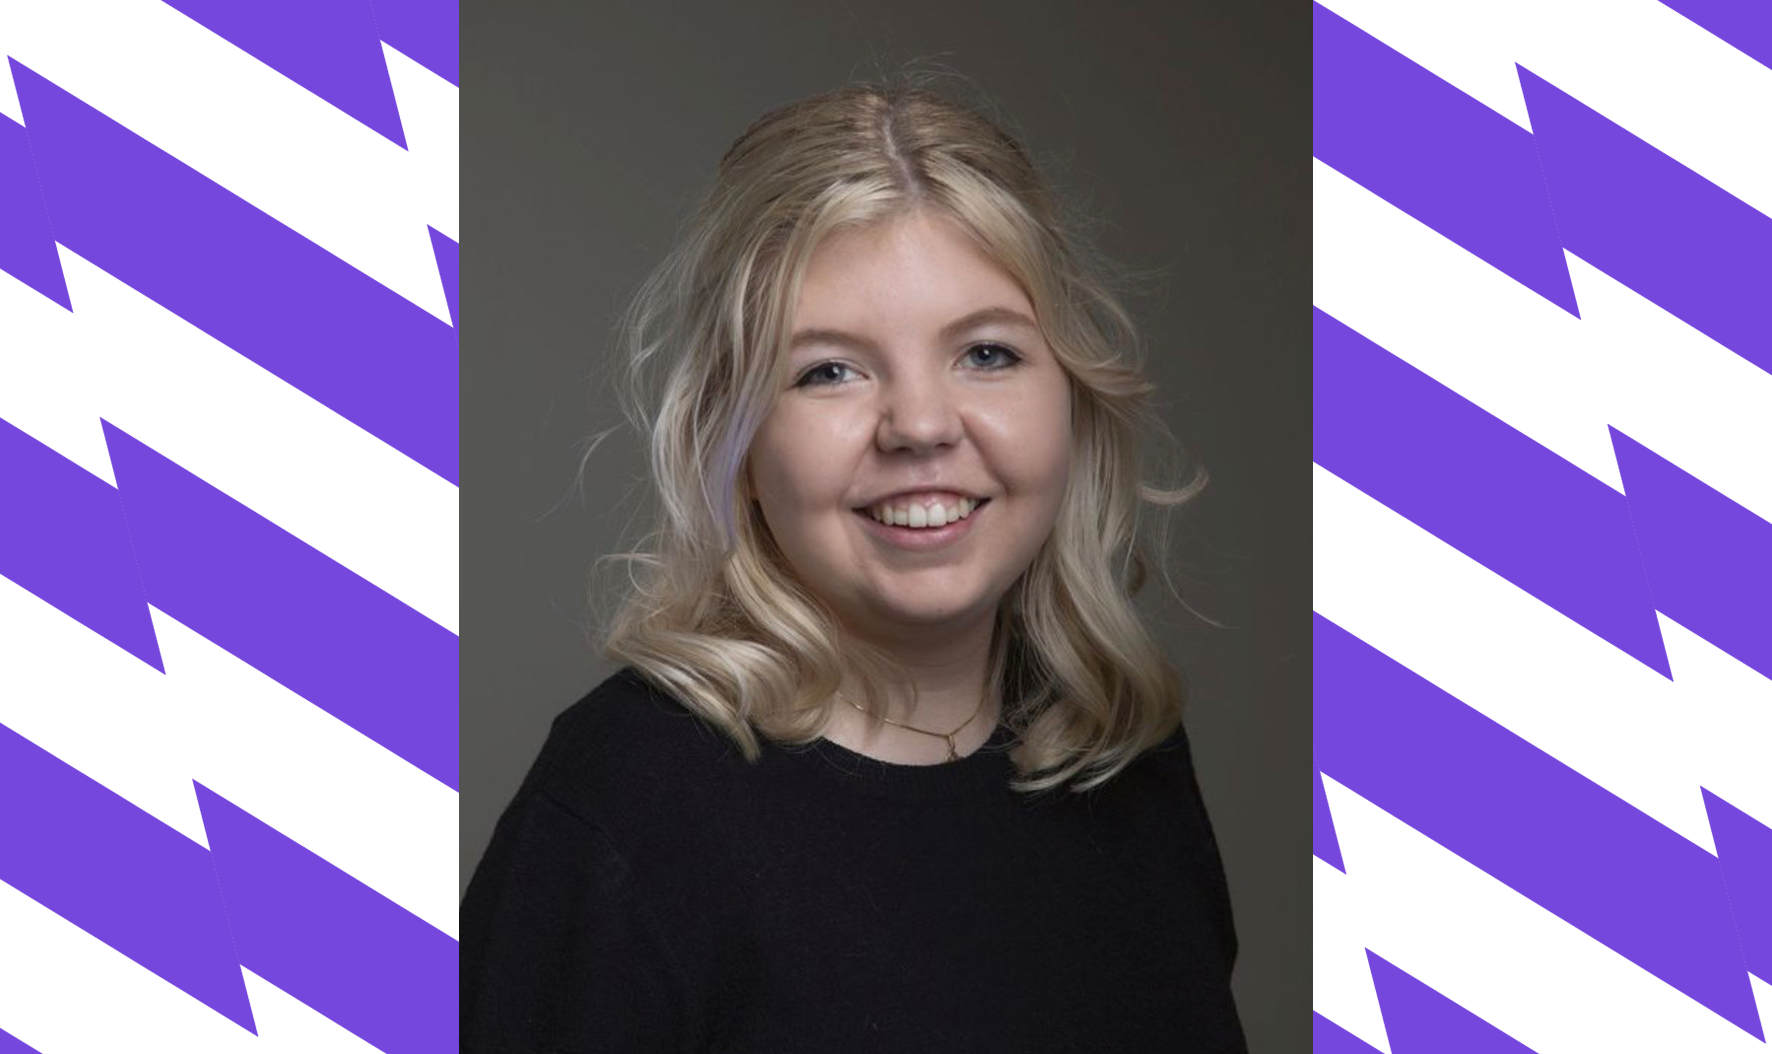  Karoline Skjæveland (19) i Rogaland FpU.